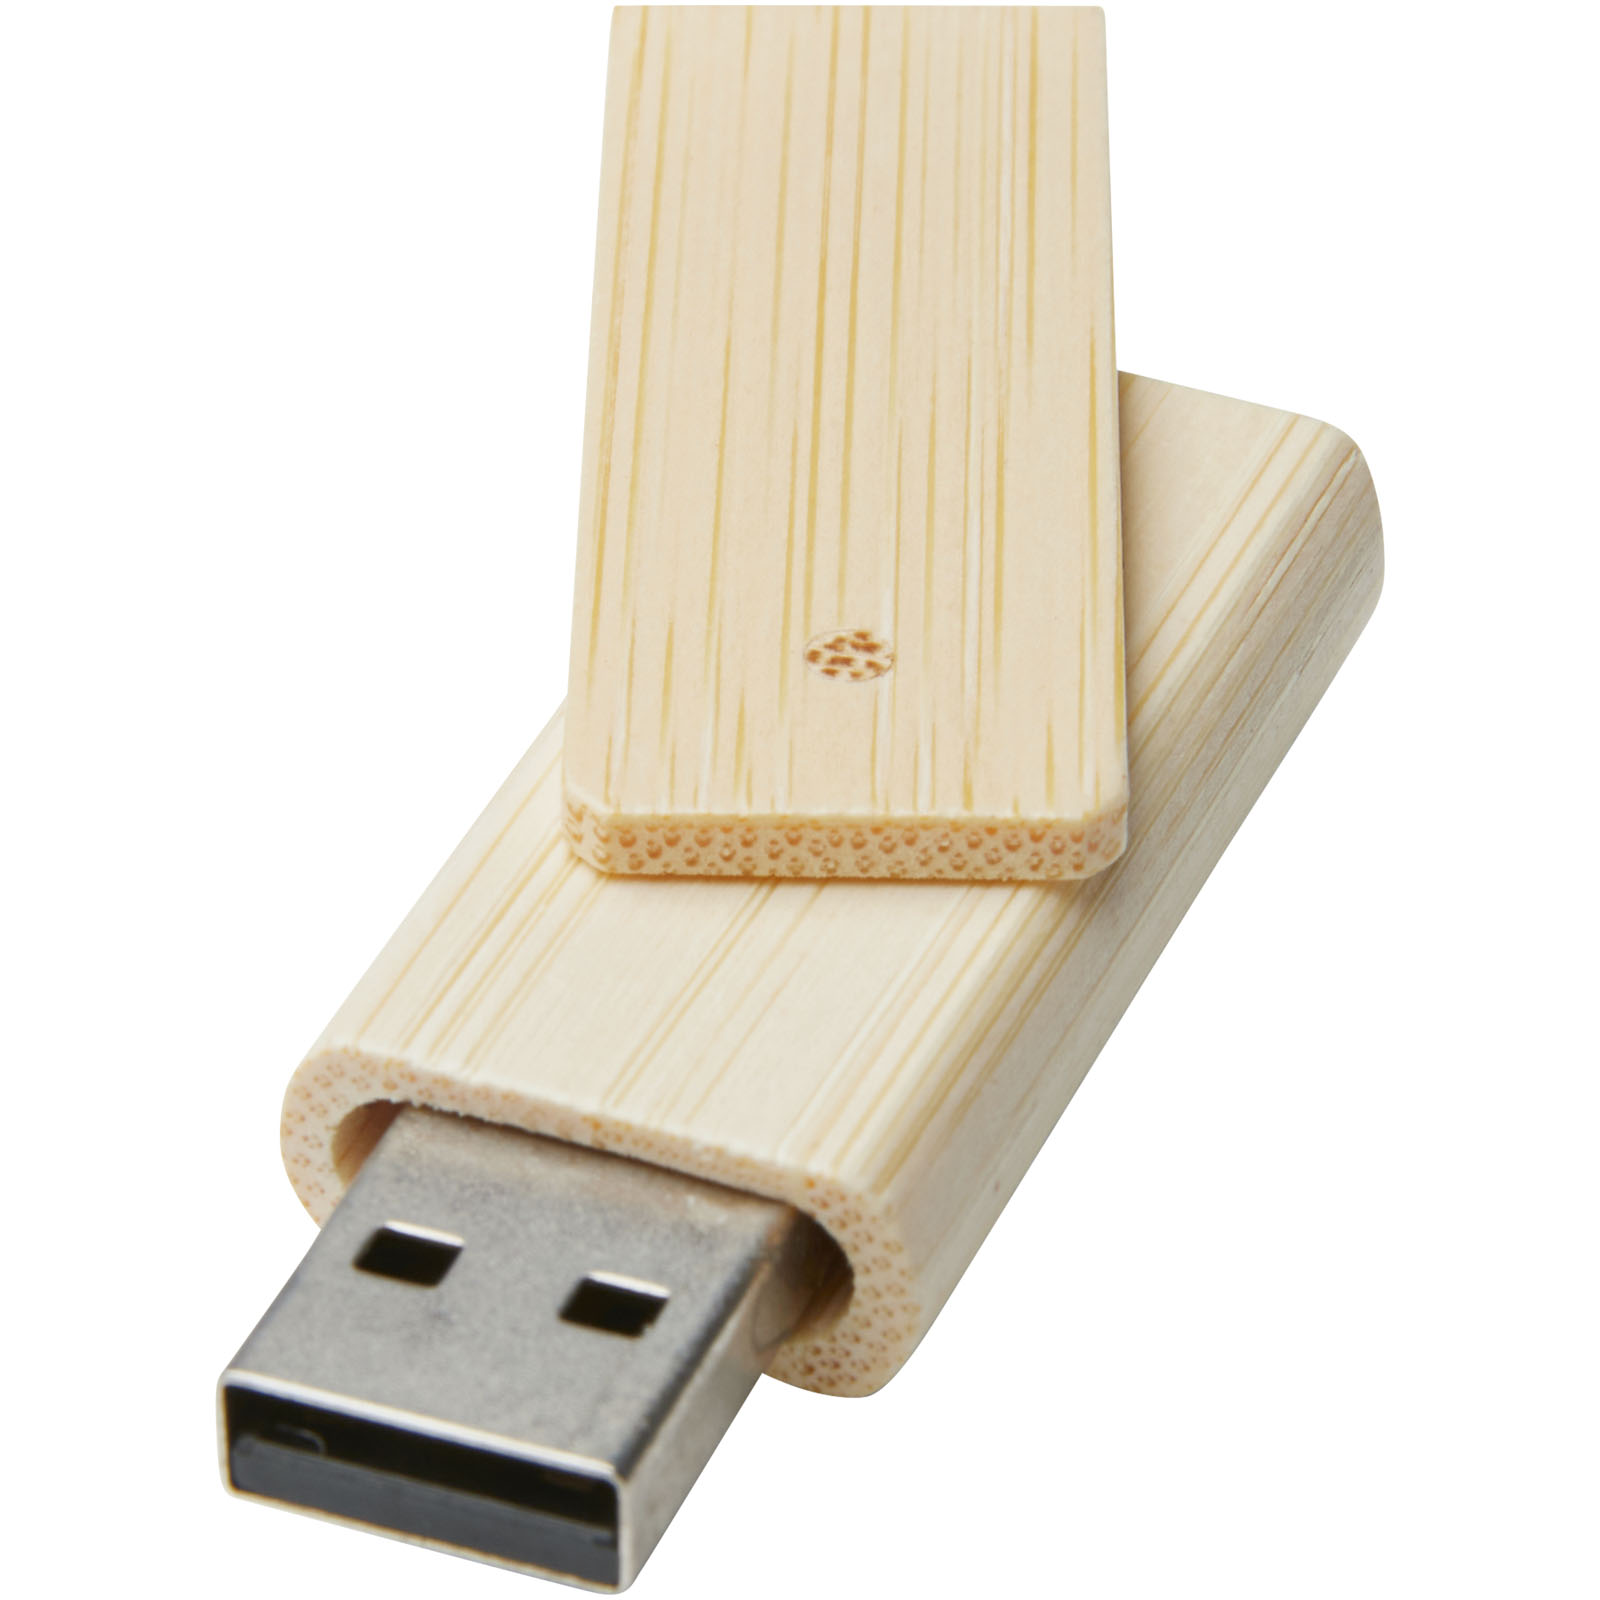 Clés USB publicitaires - Clé USB Rotate 8 Go en bambou